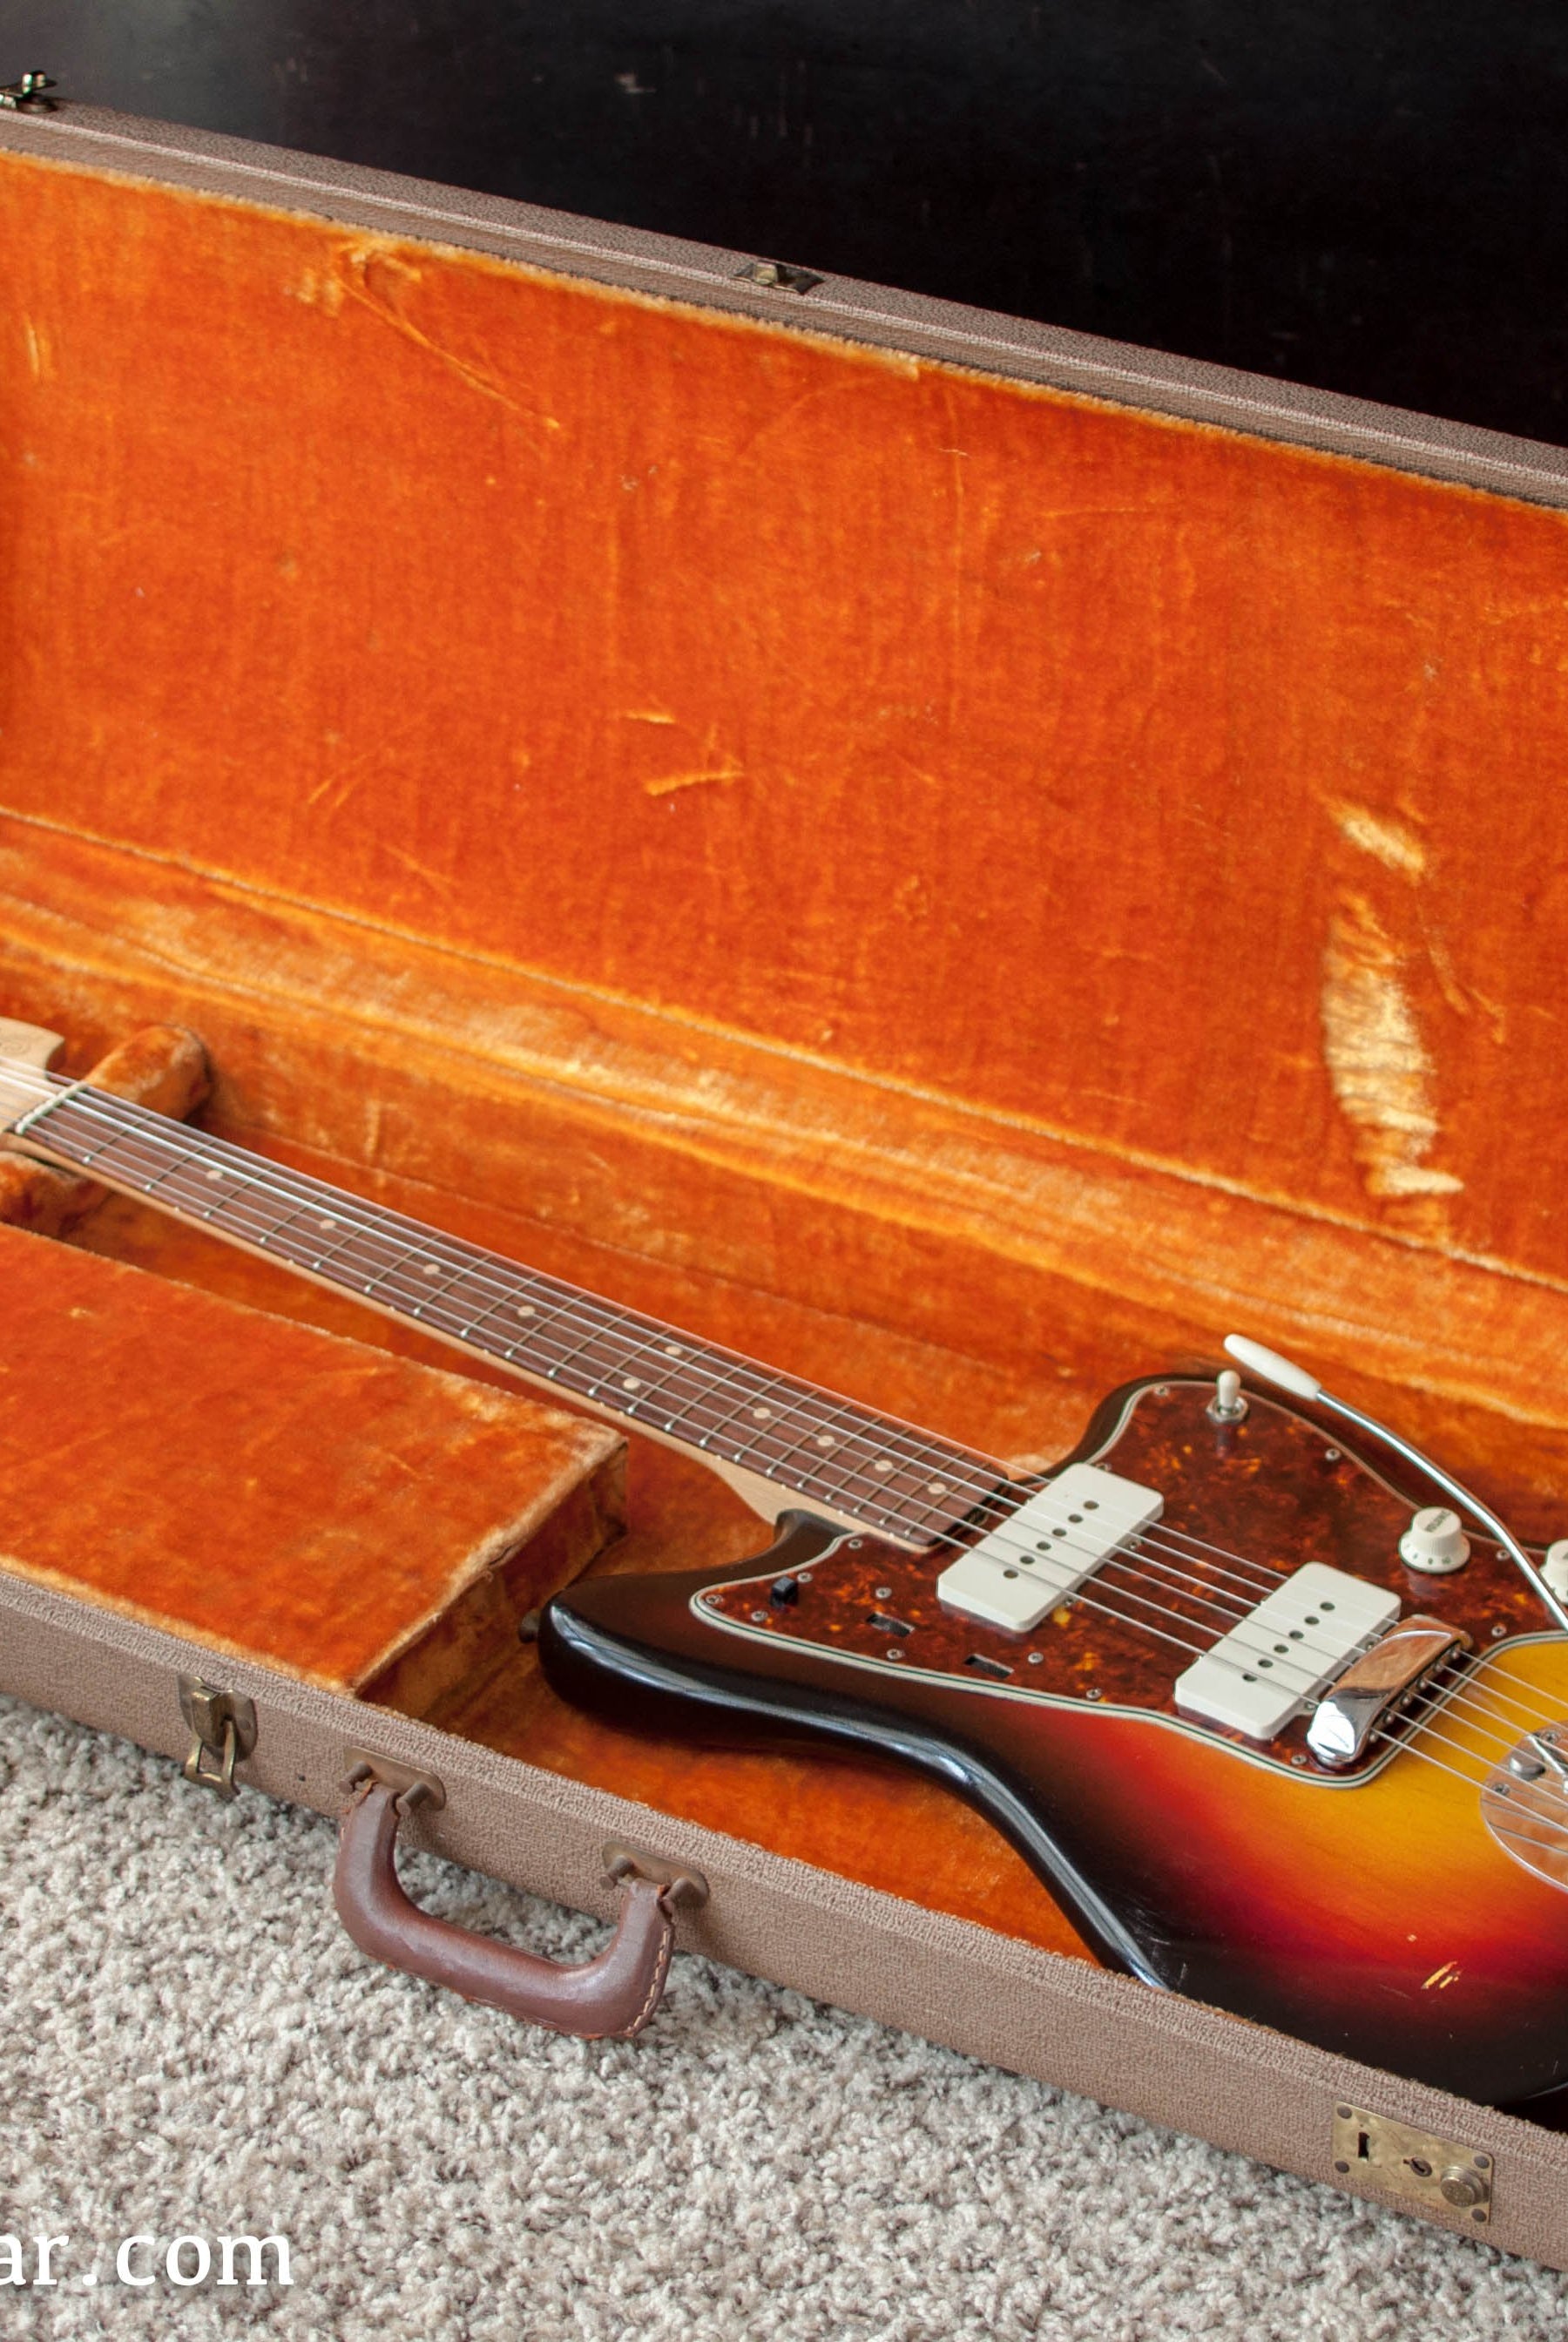 Fender Jazzmaster 1961 guitar in case